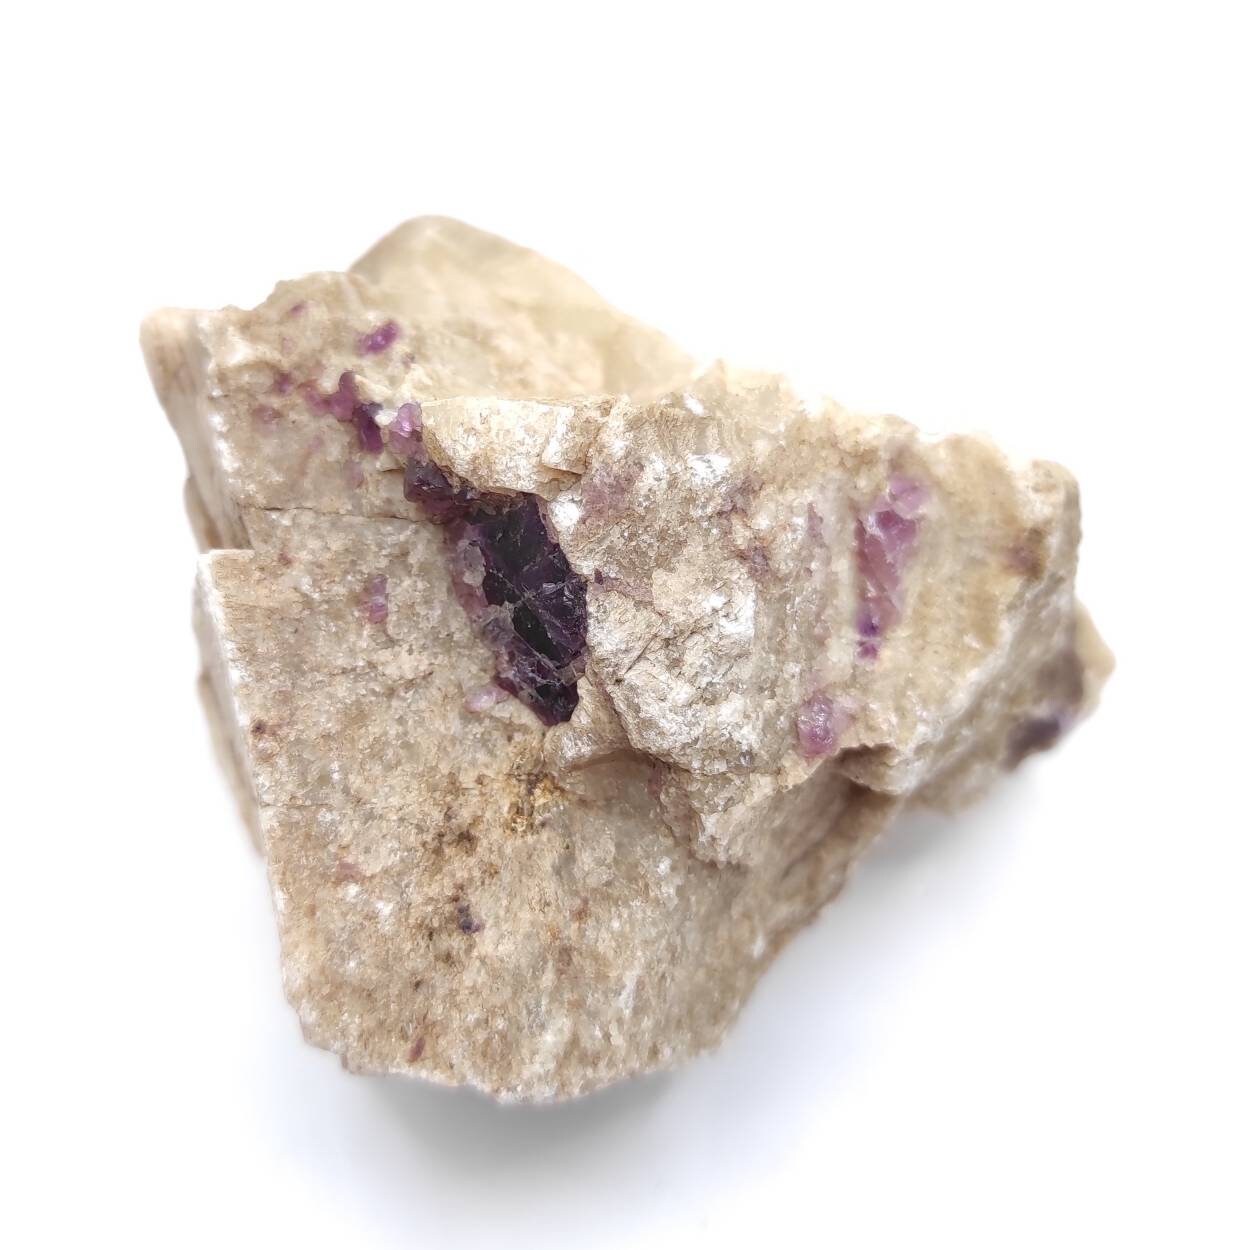 84g Purple Fluorite in Calcite from Harcourt, Ontario - Canadian Fluorite Specimen - Natural Raw Purple Fluorite Mineral - Schickler Mine